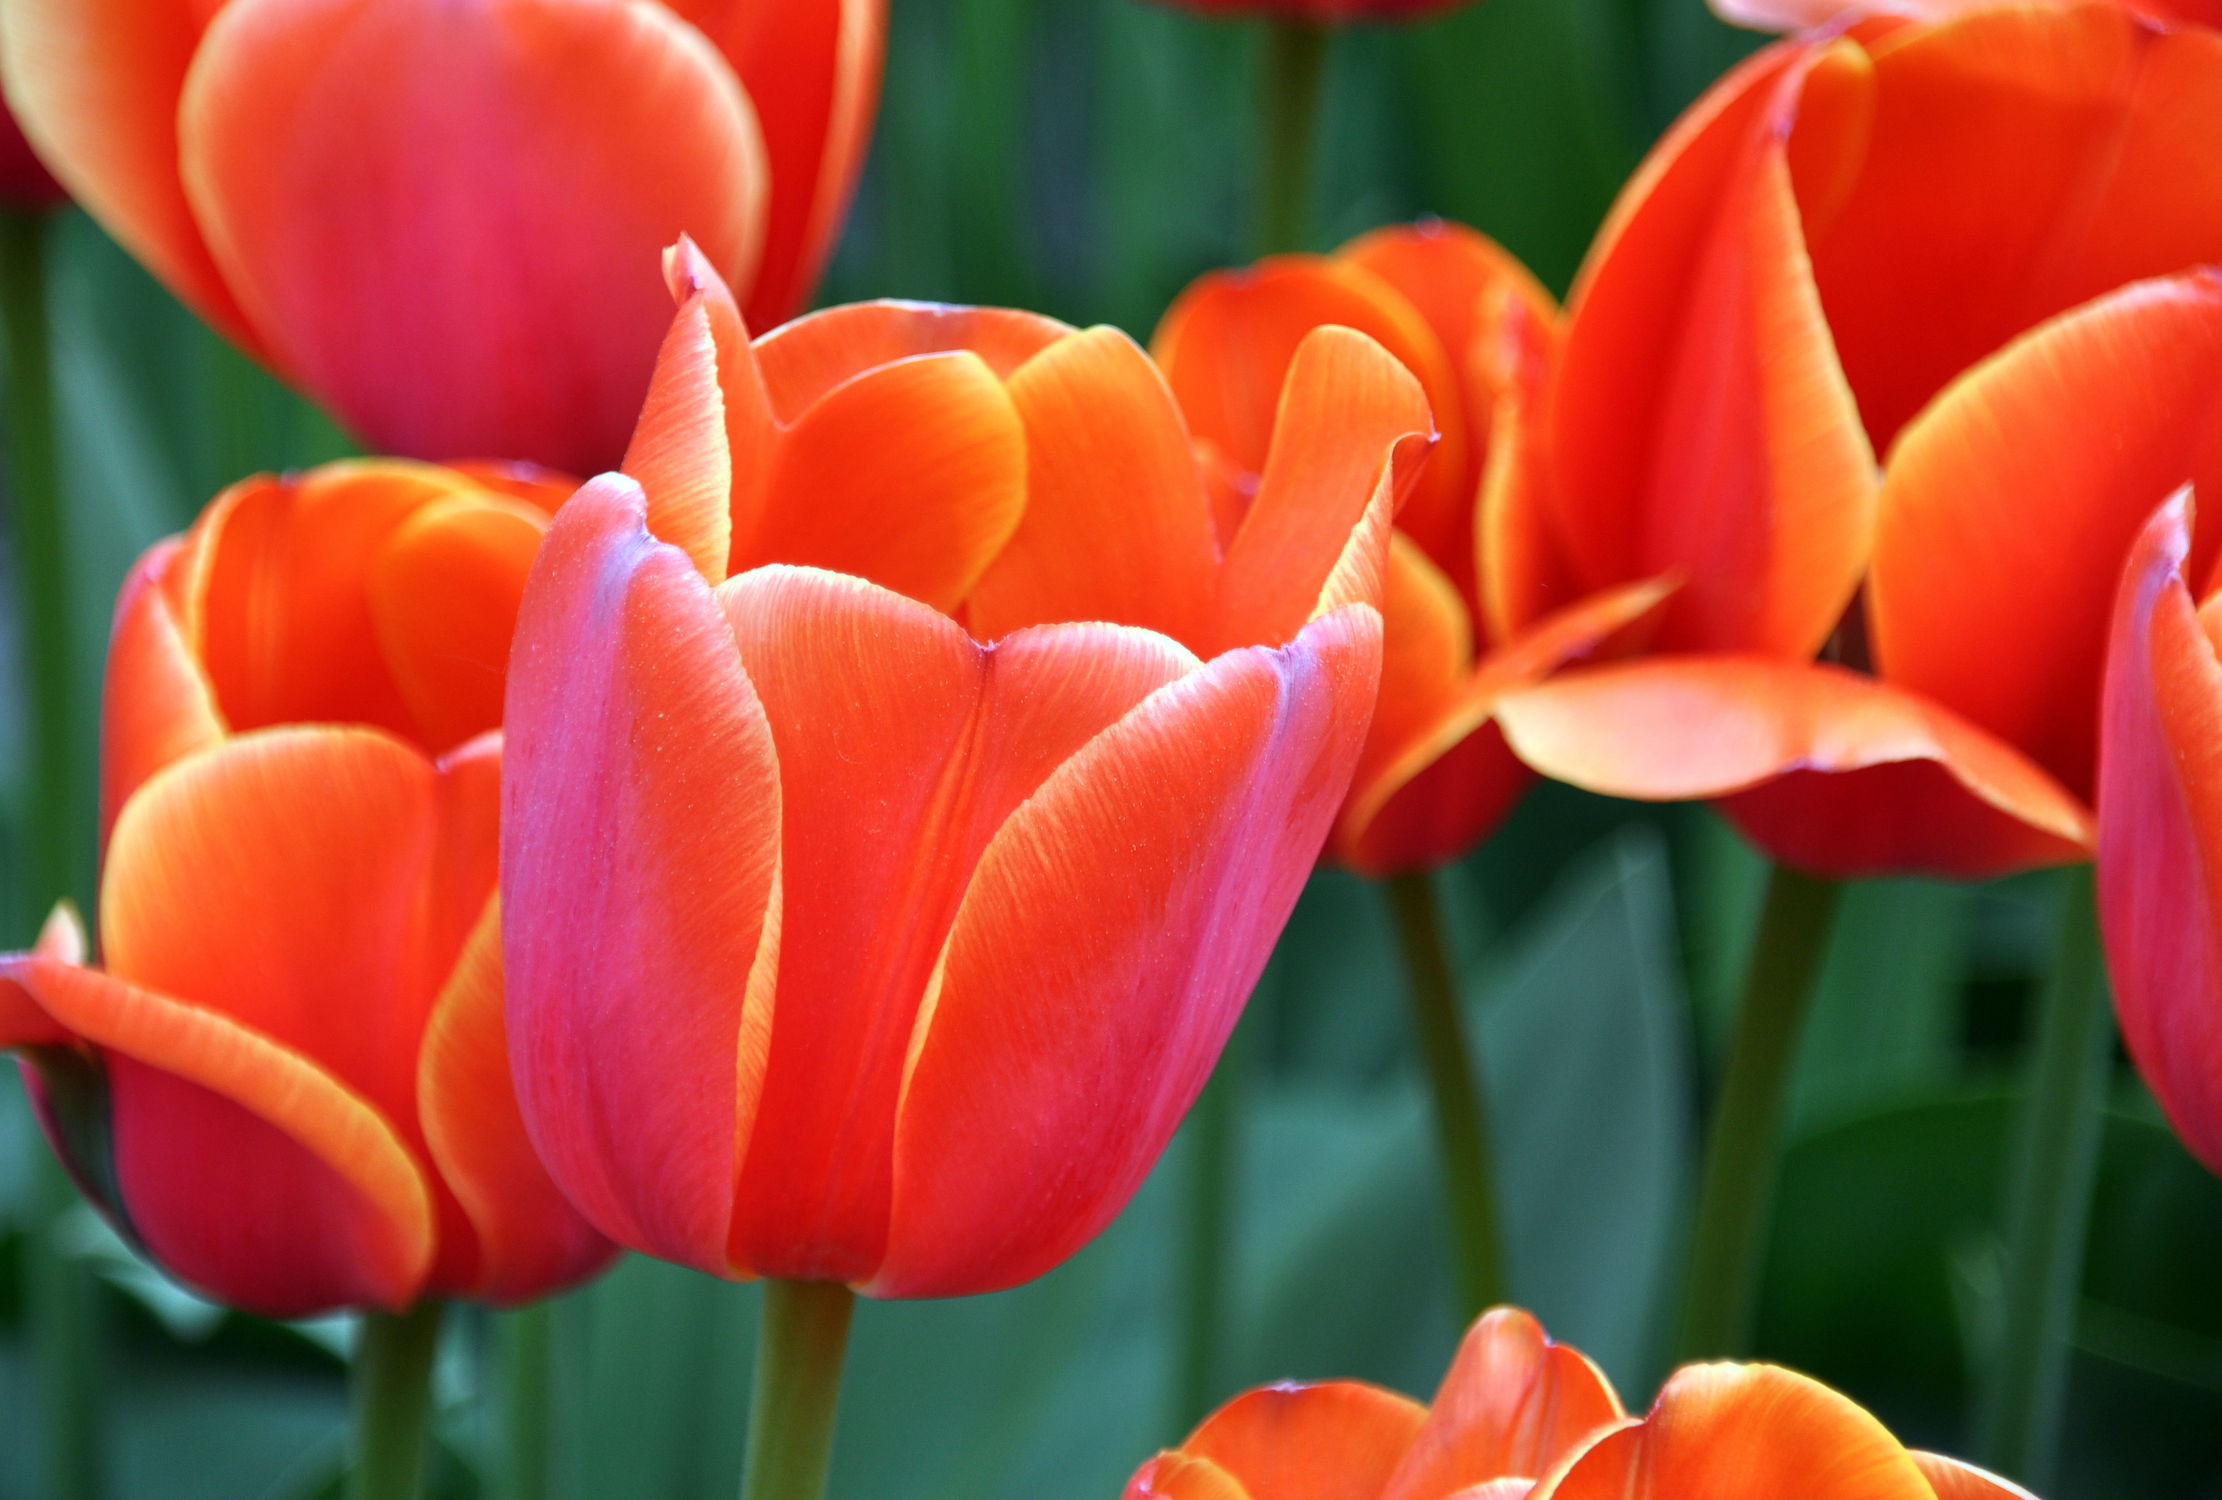 Bild mit Orange, Frühling, Rot, Tulpe, Tulips, Tulpen, Tulip, orangerot, intensiv, farbenfroh, leuchtend, tulpenpracht, tulpenbeet, frühblüher, frühjahr